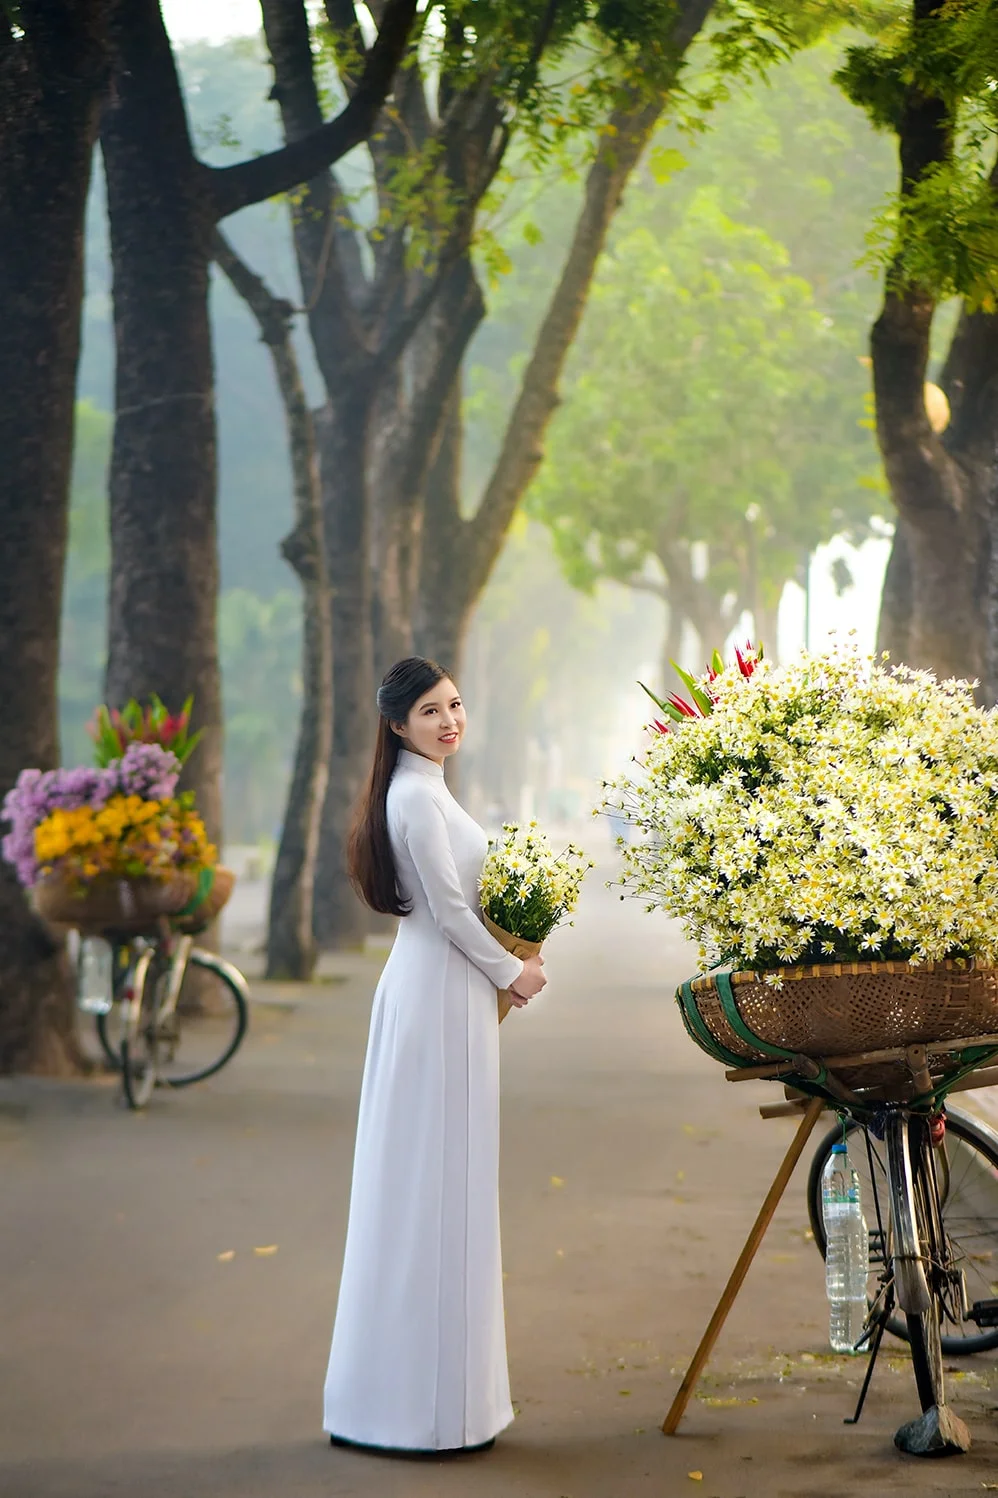 Giá chụp ảnh áo dài ở Hà Nội bao nhiêu